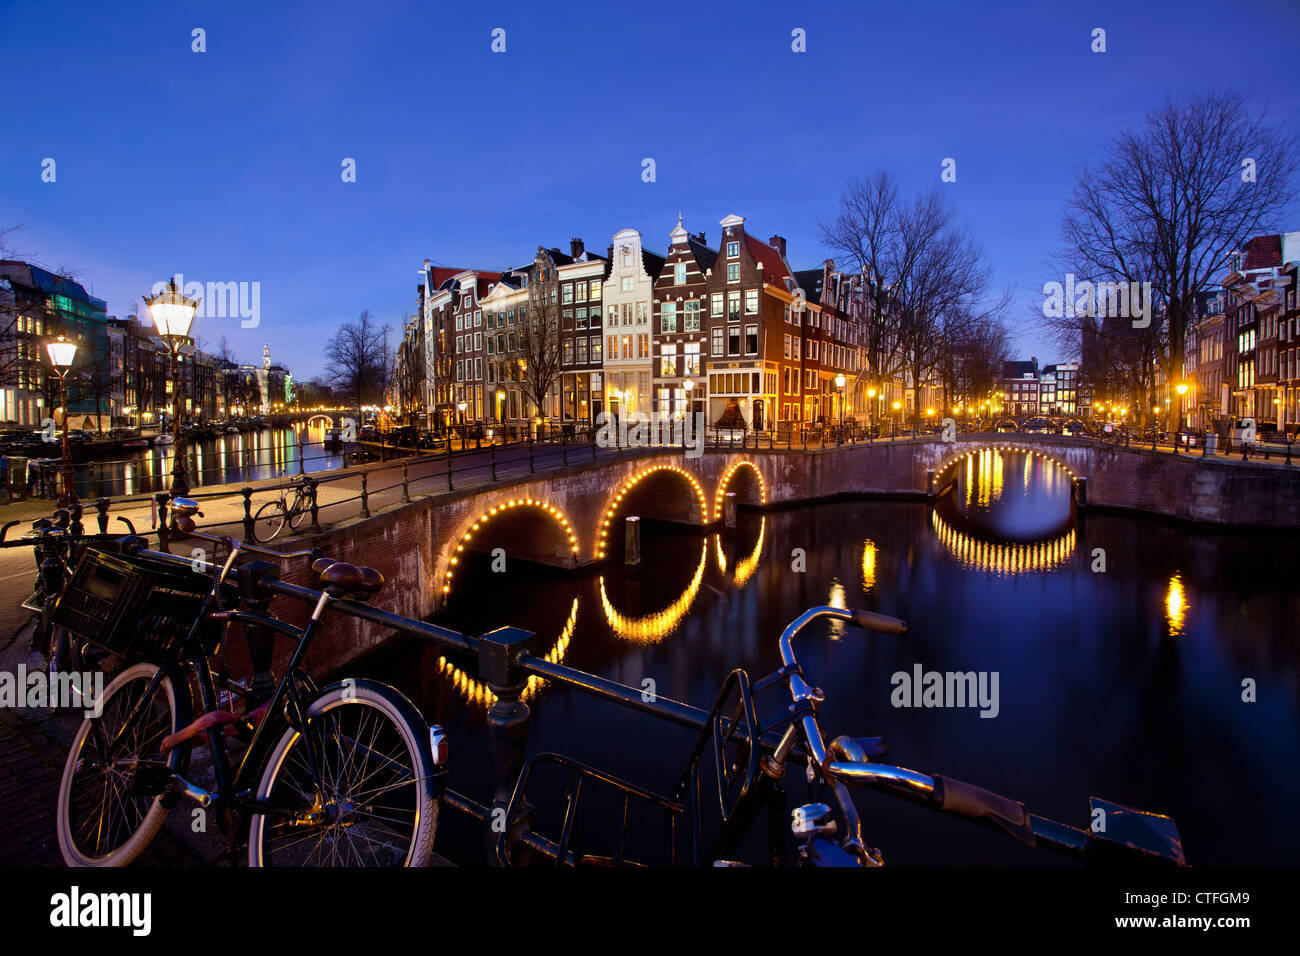 Amsterdam, Crépuscule, traversée de canaux appelés Keizersgracht en Leidsegracht. Les ponts éclairés, des vélos. UNESCO World Heritage Site. Banque D'Images